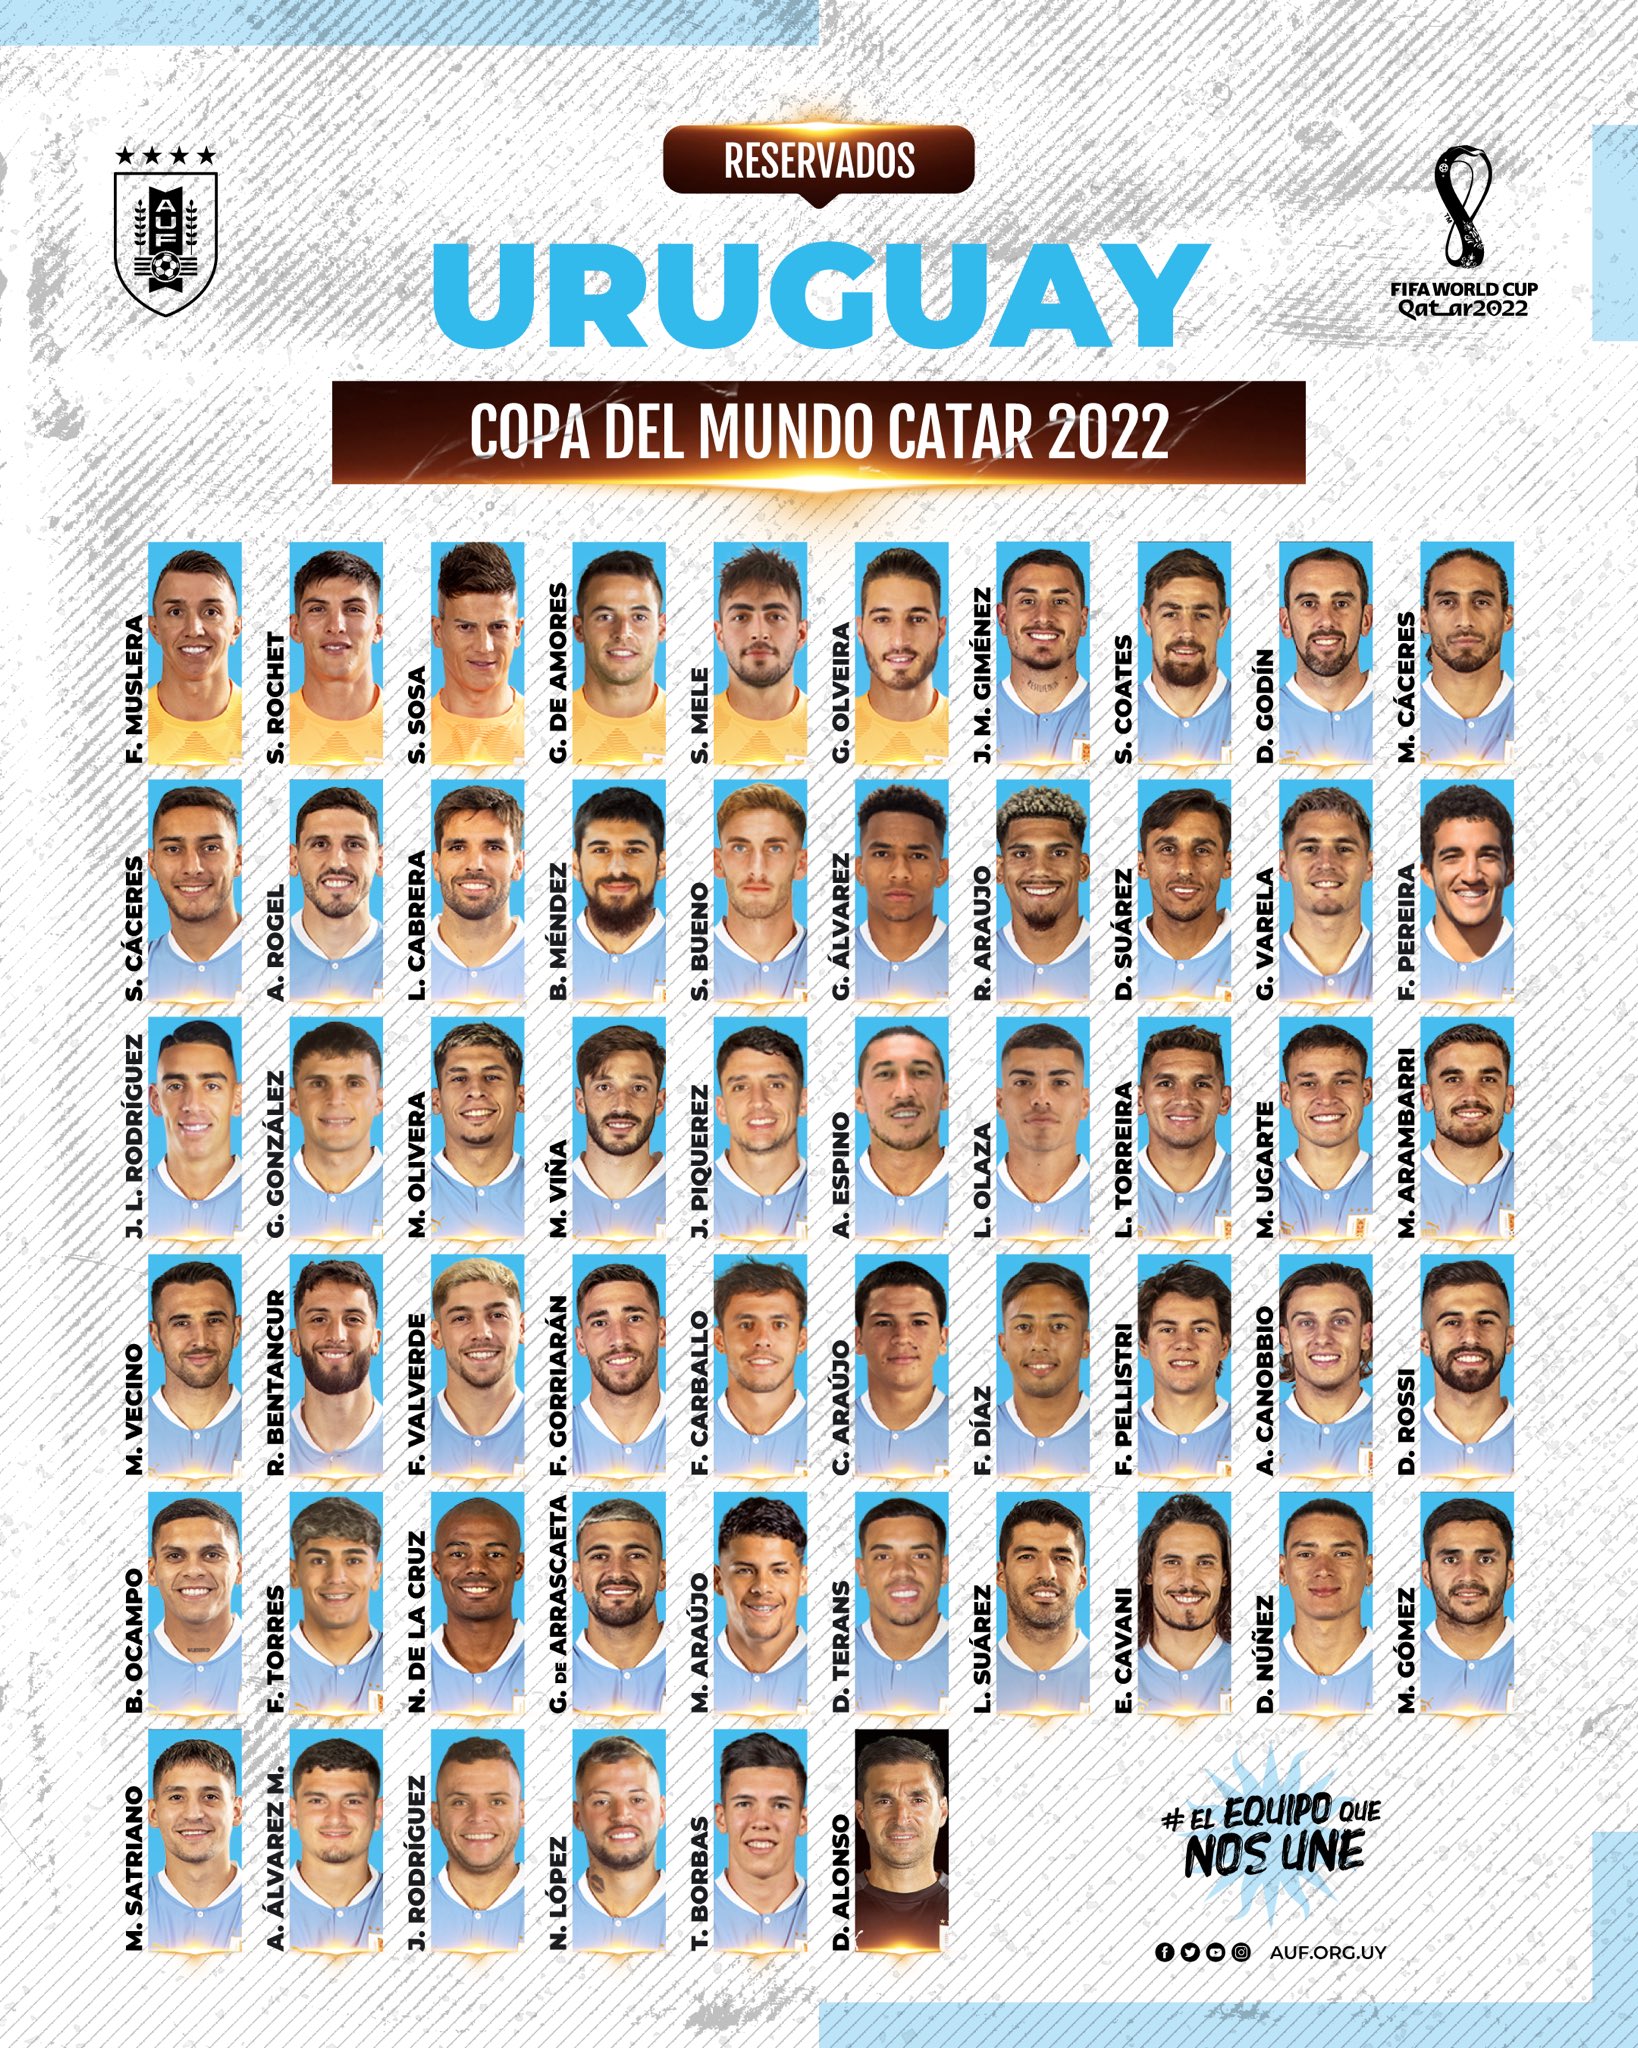 Selección Uruguaya on Twitter: "📋 𝗥𝗘𝗦𝗘𝗥𝗩𝗔𝗗𝗢𝗦 𝗠𝗨𝗡𝗗𝗜𝗔𝗟𝗜𝗦𝗧𝗔𝗦 Lista de jugadores 𝐫𝐞𝐬𝐞𝐫𝐯𝐚𝐝𝐨𝐬 Diego para el 𝐌𝐮𝐧𝐝𝐢𝐚𝐥 𝐝𝐞 𝐂𝐚𝐭𝐚𝐫. 🇶🇦 @FIFAWorldCup https://t.co/EiXNlqoRKr" Twitter